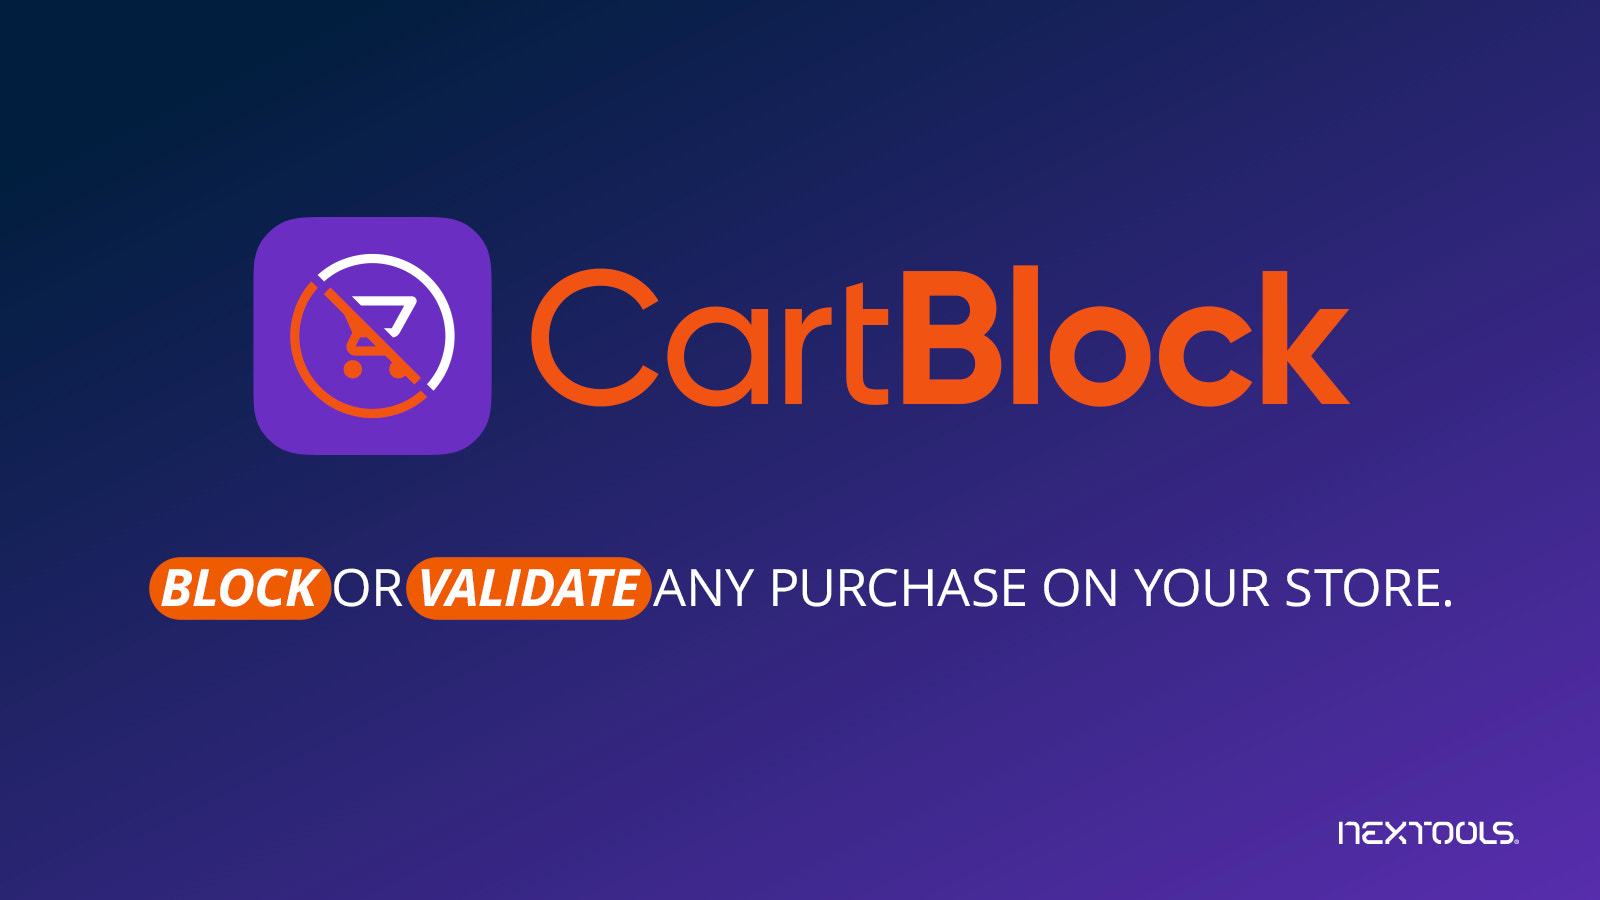 CartBlock Bloker & Valider ethvert køb i indkøbskurv og ved kassen